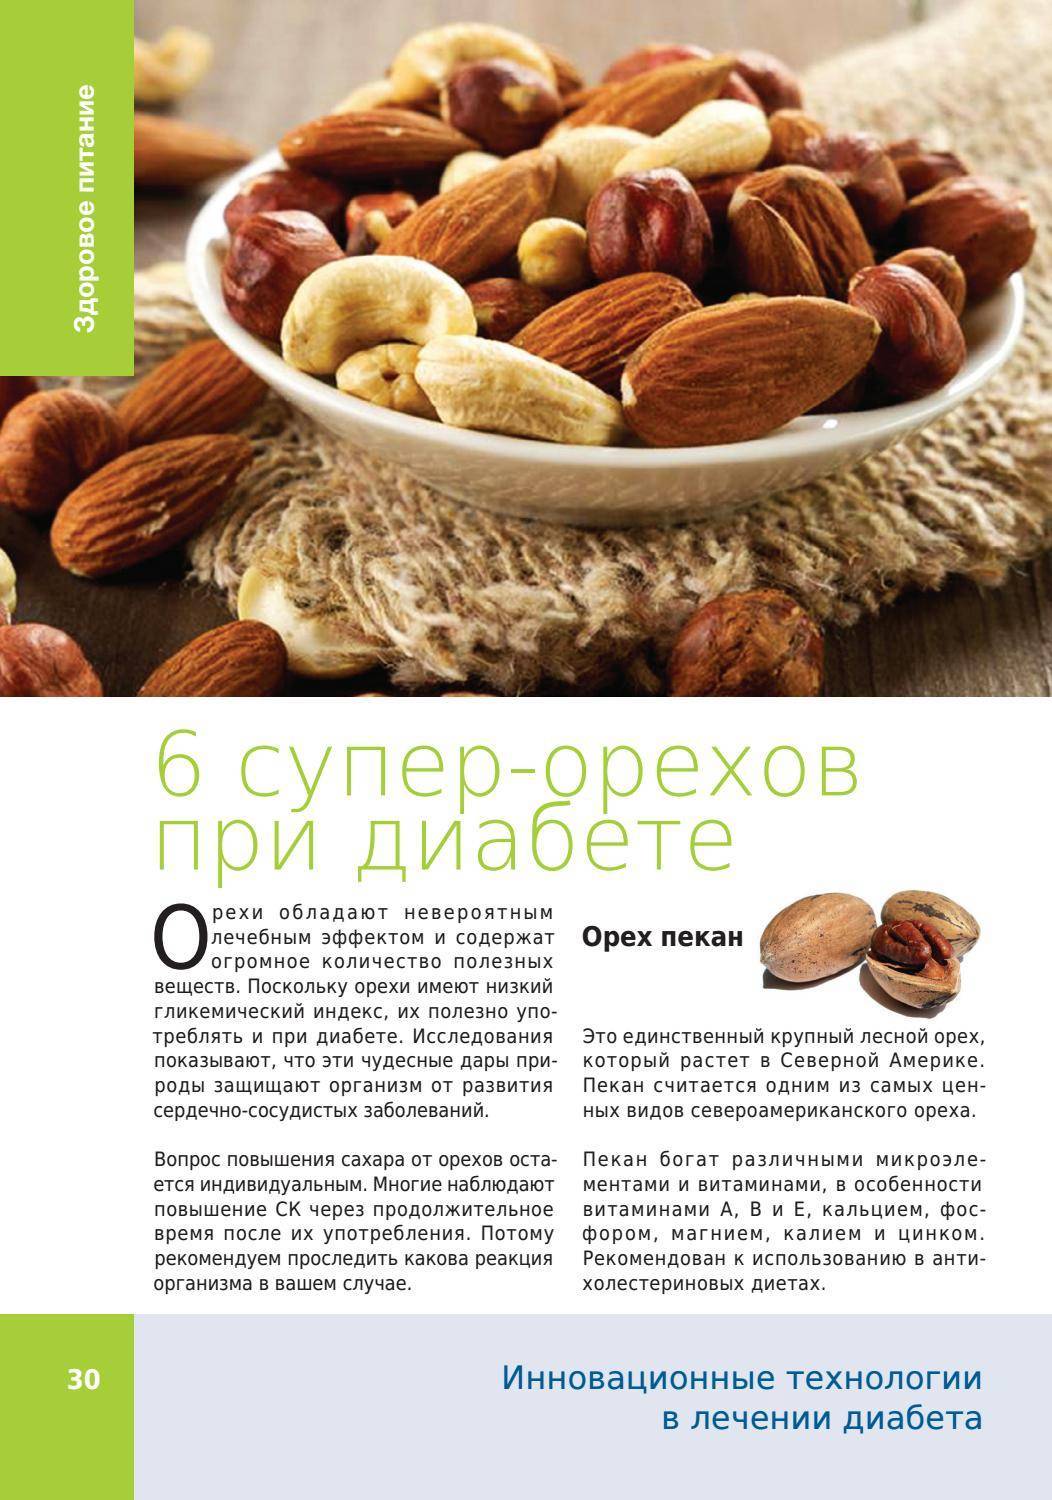 Орехи при диабете: их польза, вред и употребление при болезни